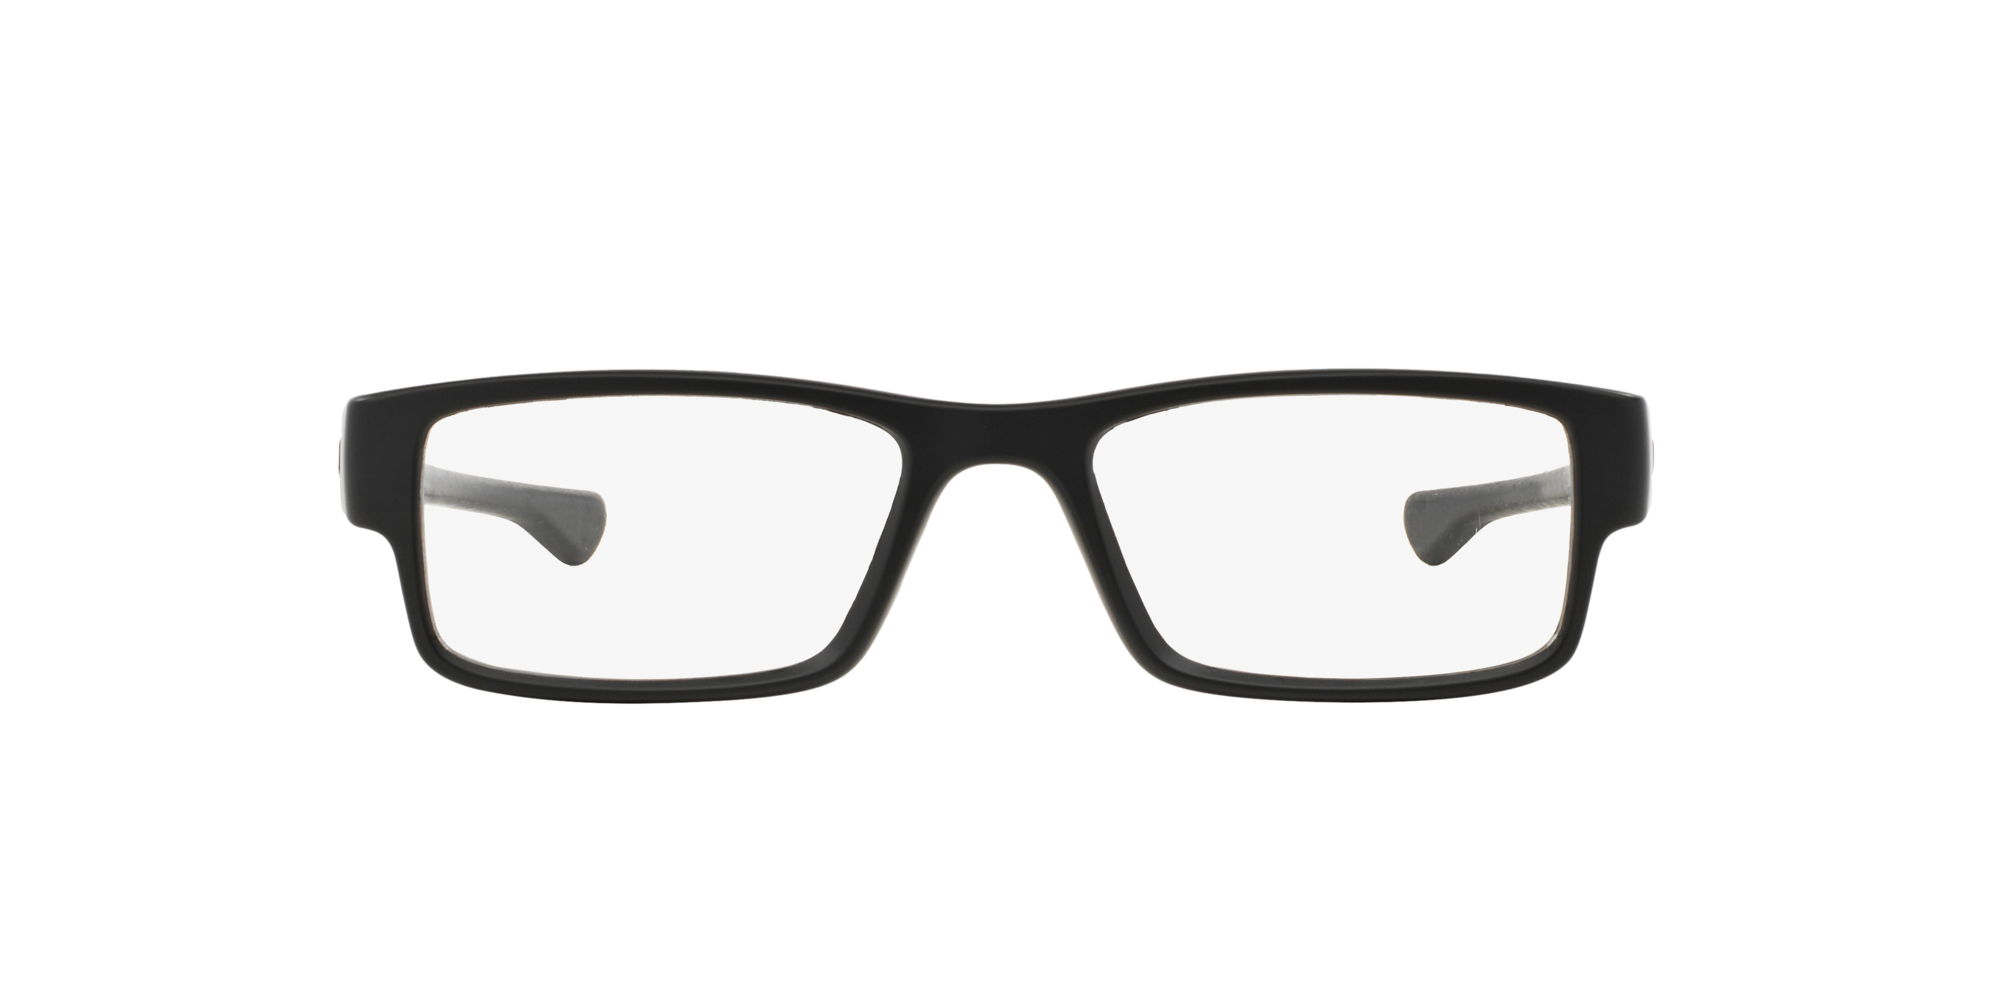 oakley frames for glasses